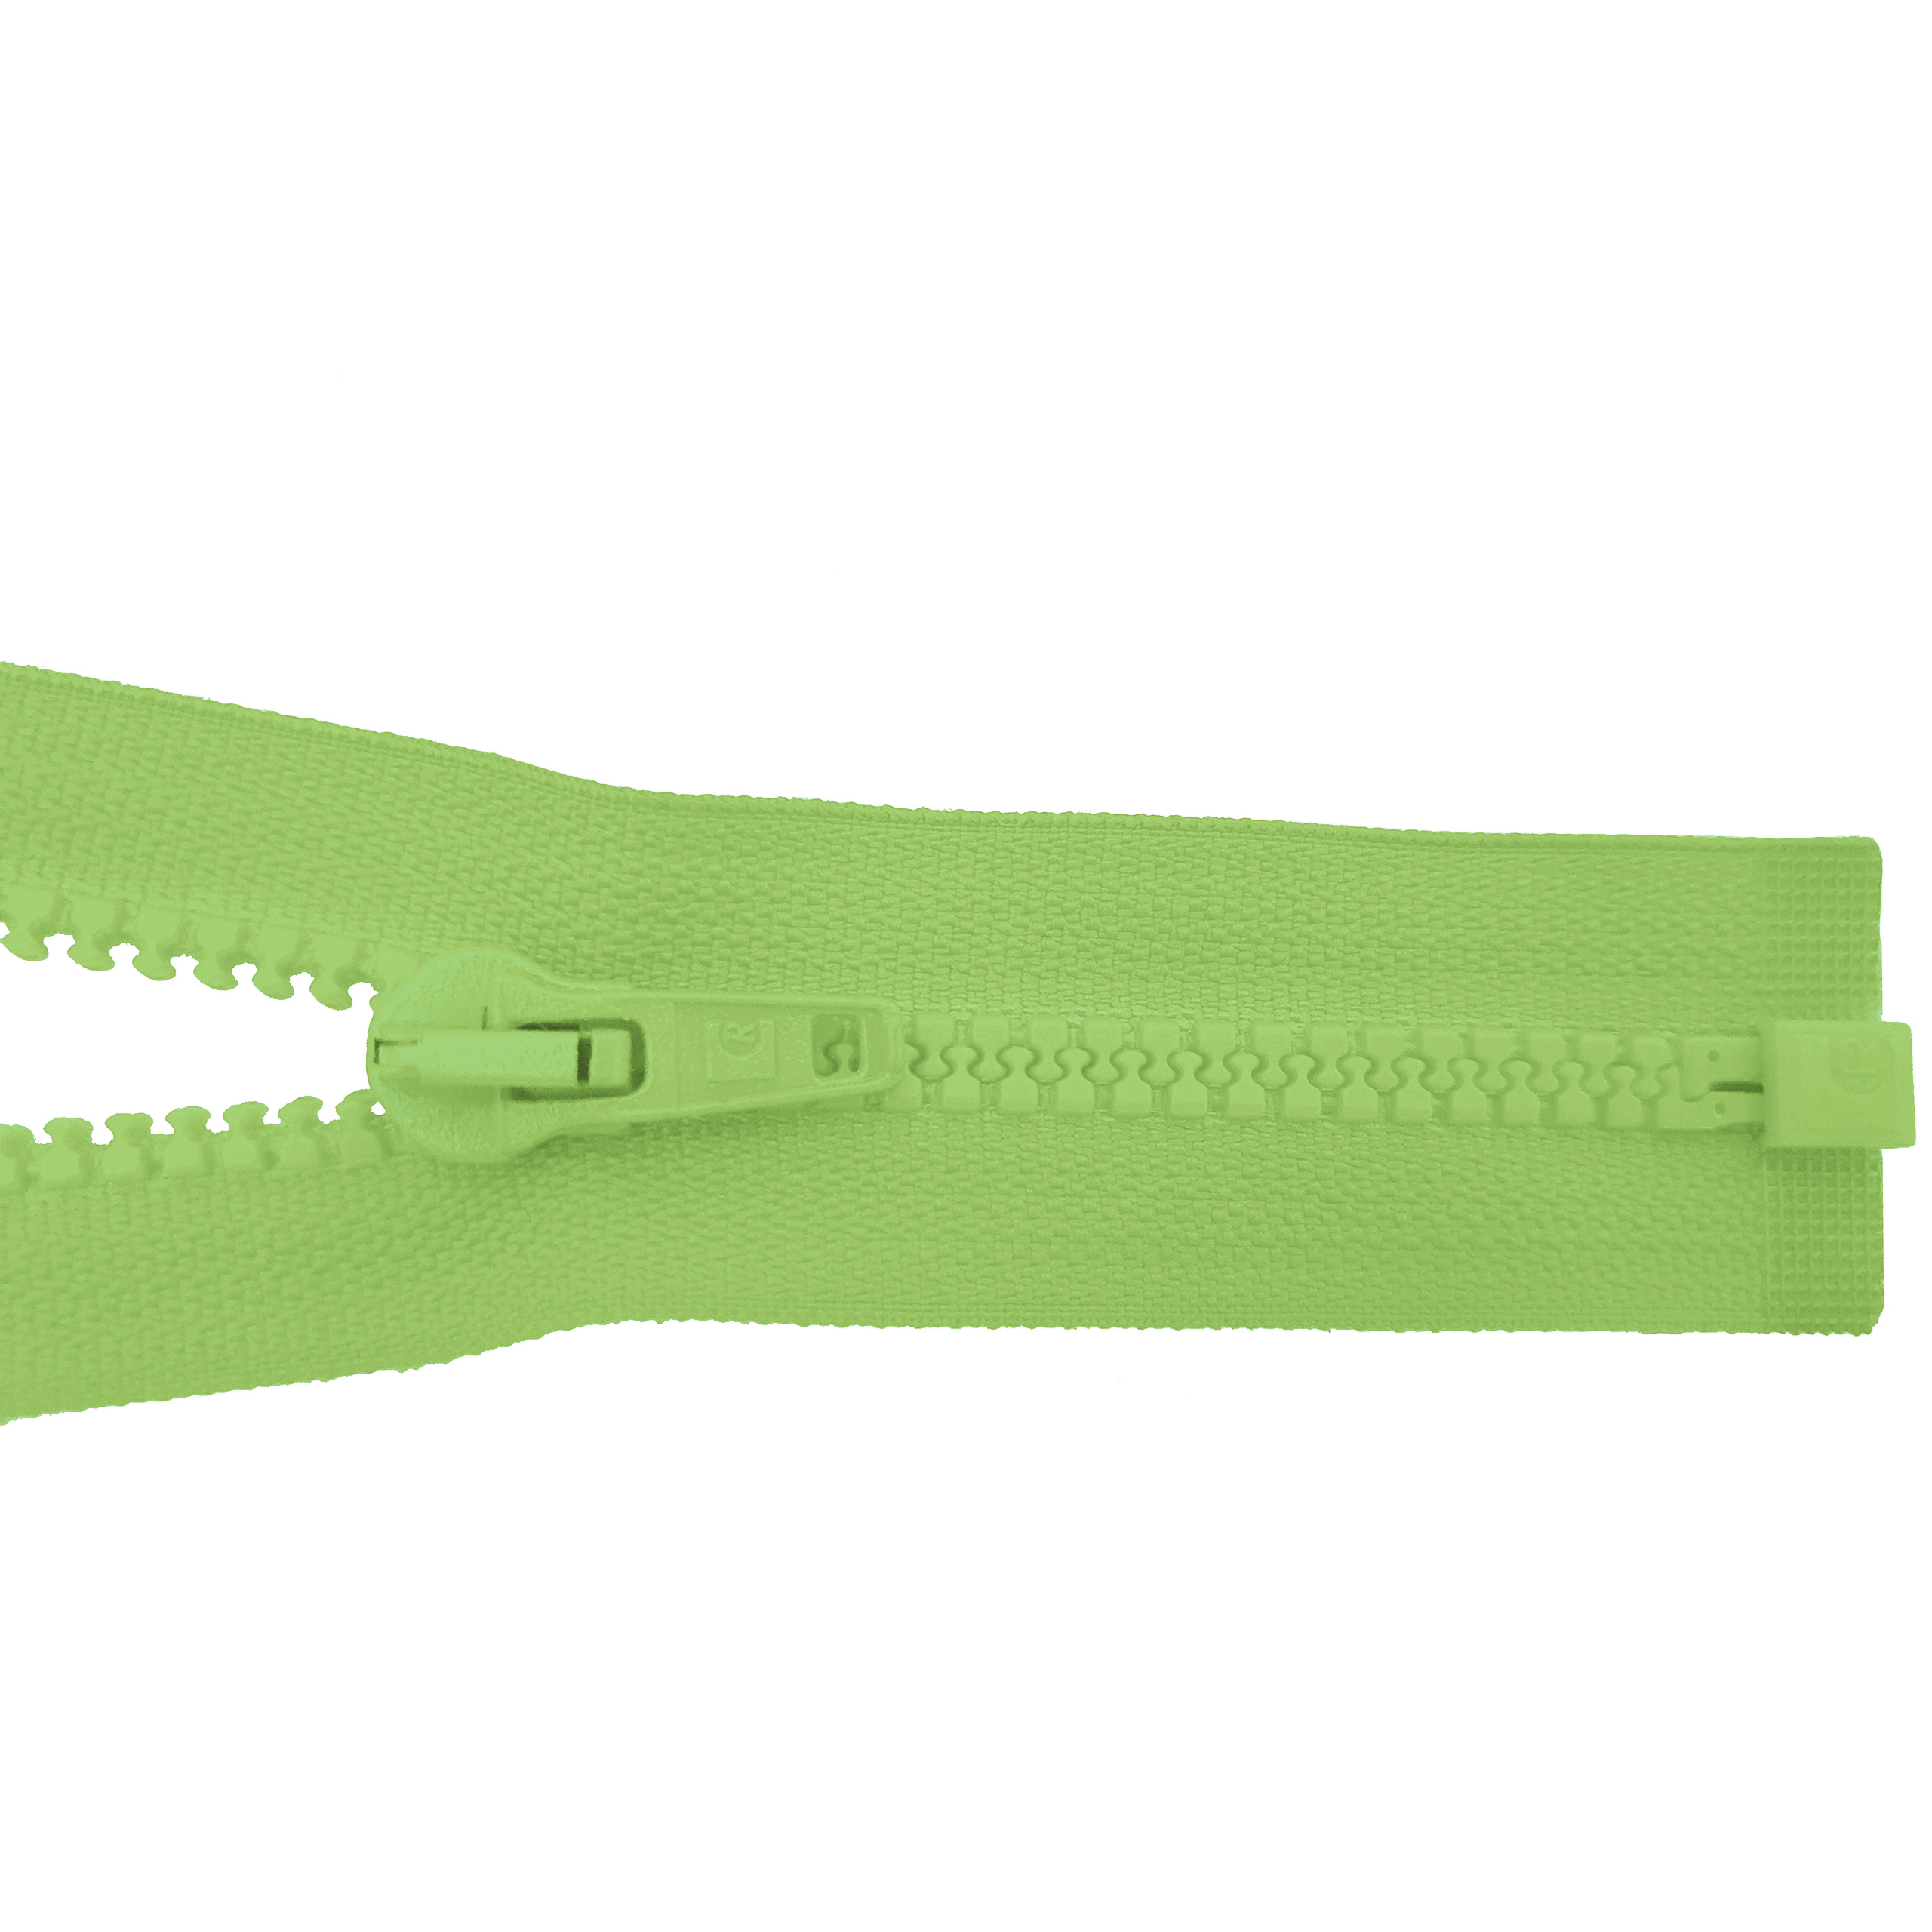 Reißverschluss 80cm, teilbar, Kstoff Zähne breit, apfelgrün, hochwertiger Marken-Reißverschluss von Rubi/Barcelona